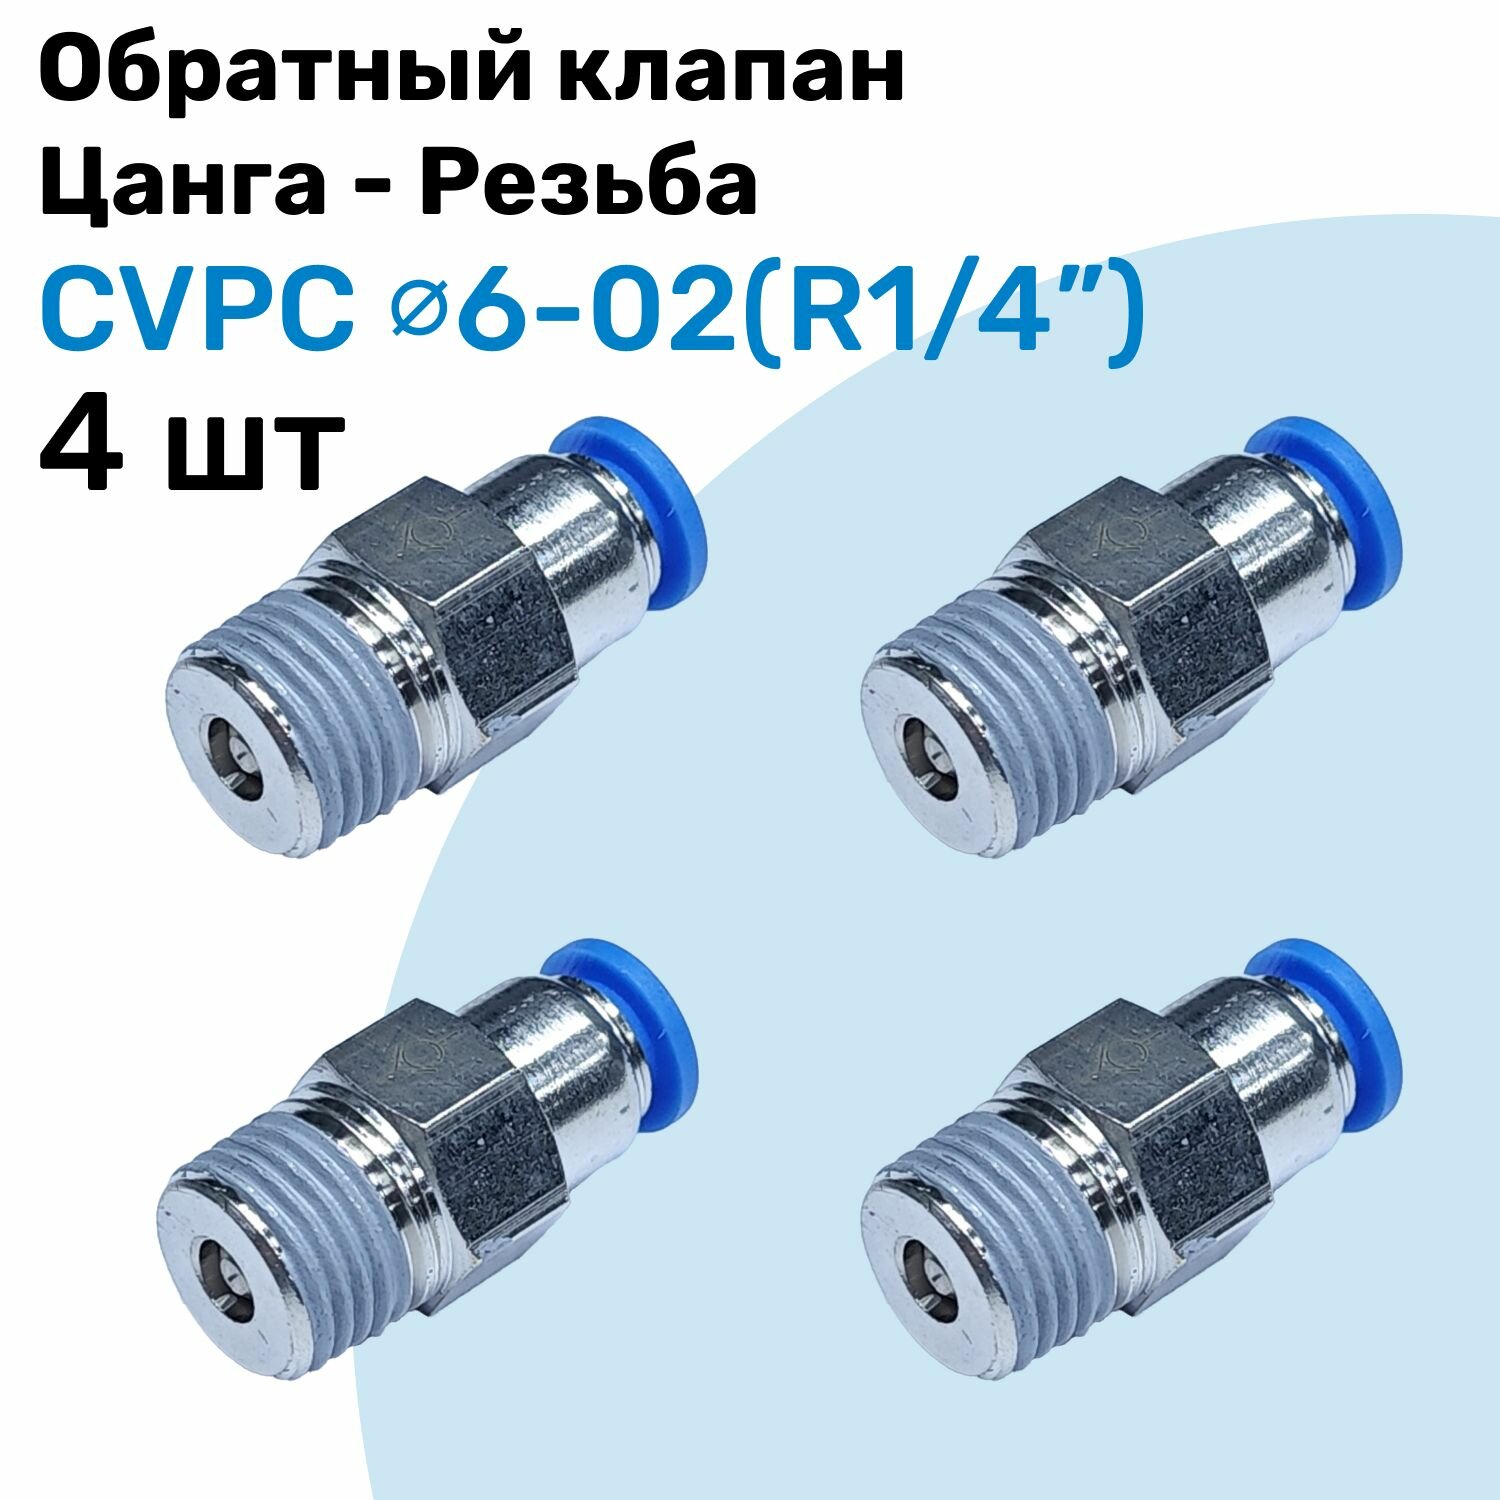 Обратный клапан латунный CVPC 6-02, 6мм - R1/4", Цанга - Внешняя резьба, Пневматический клапан NBPT, Набор 4шт